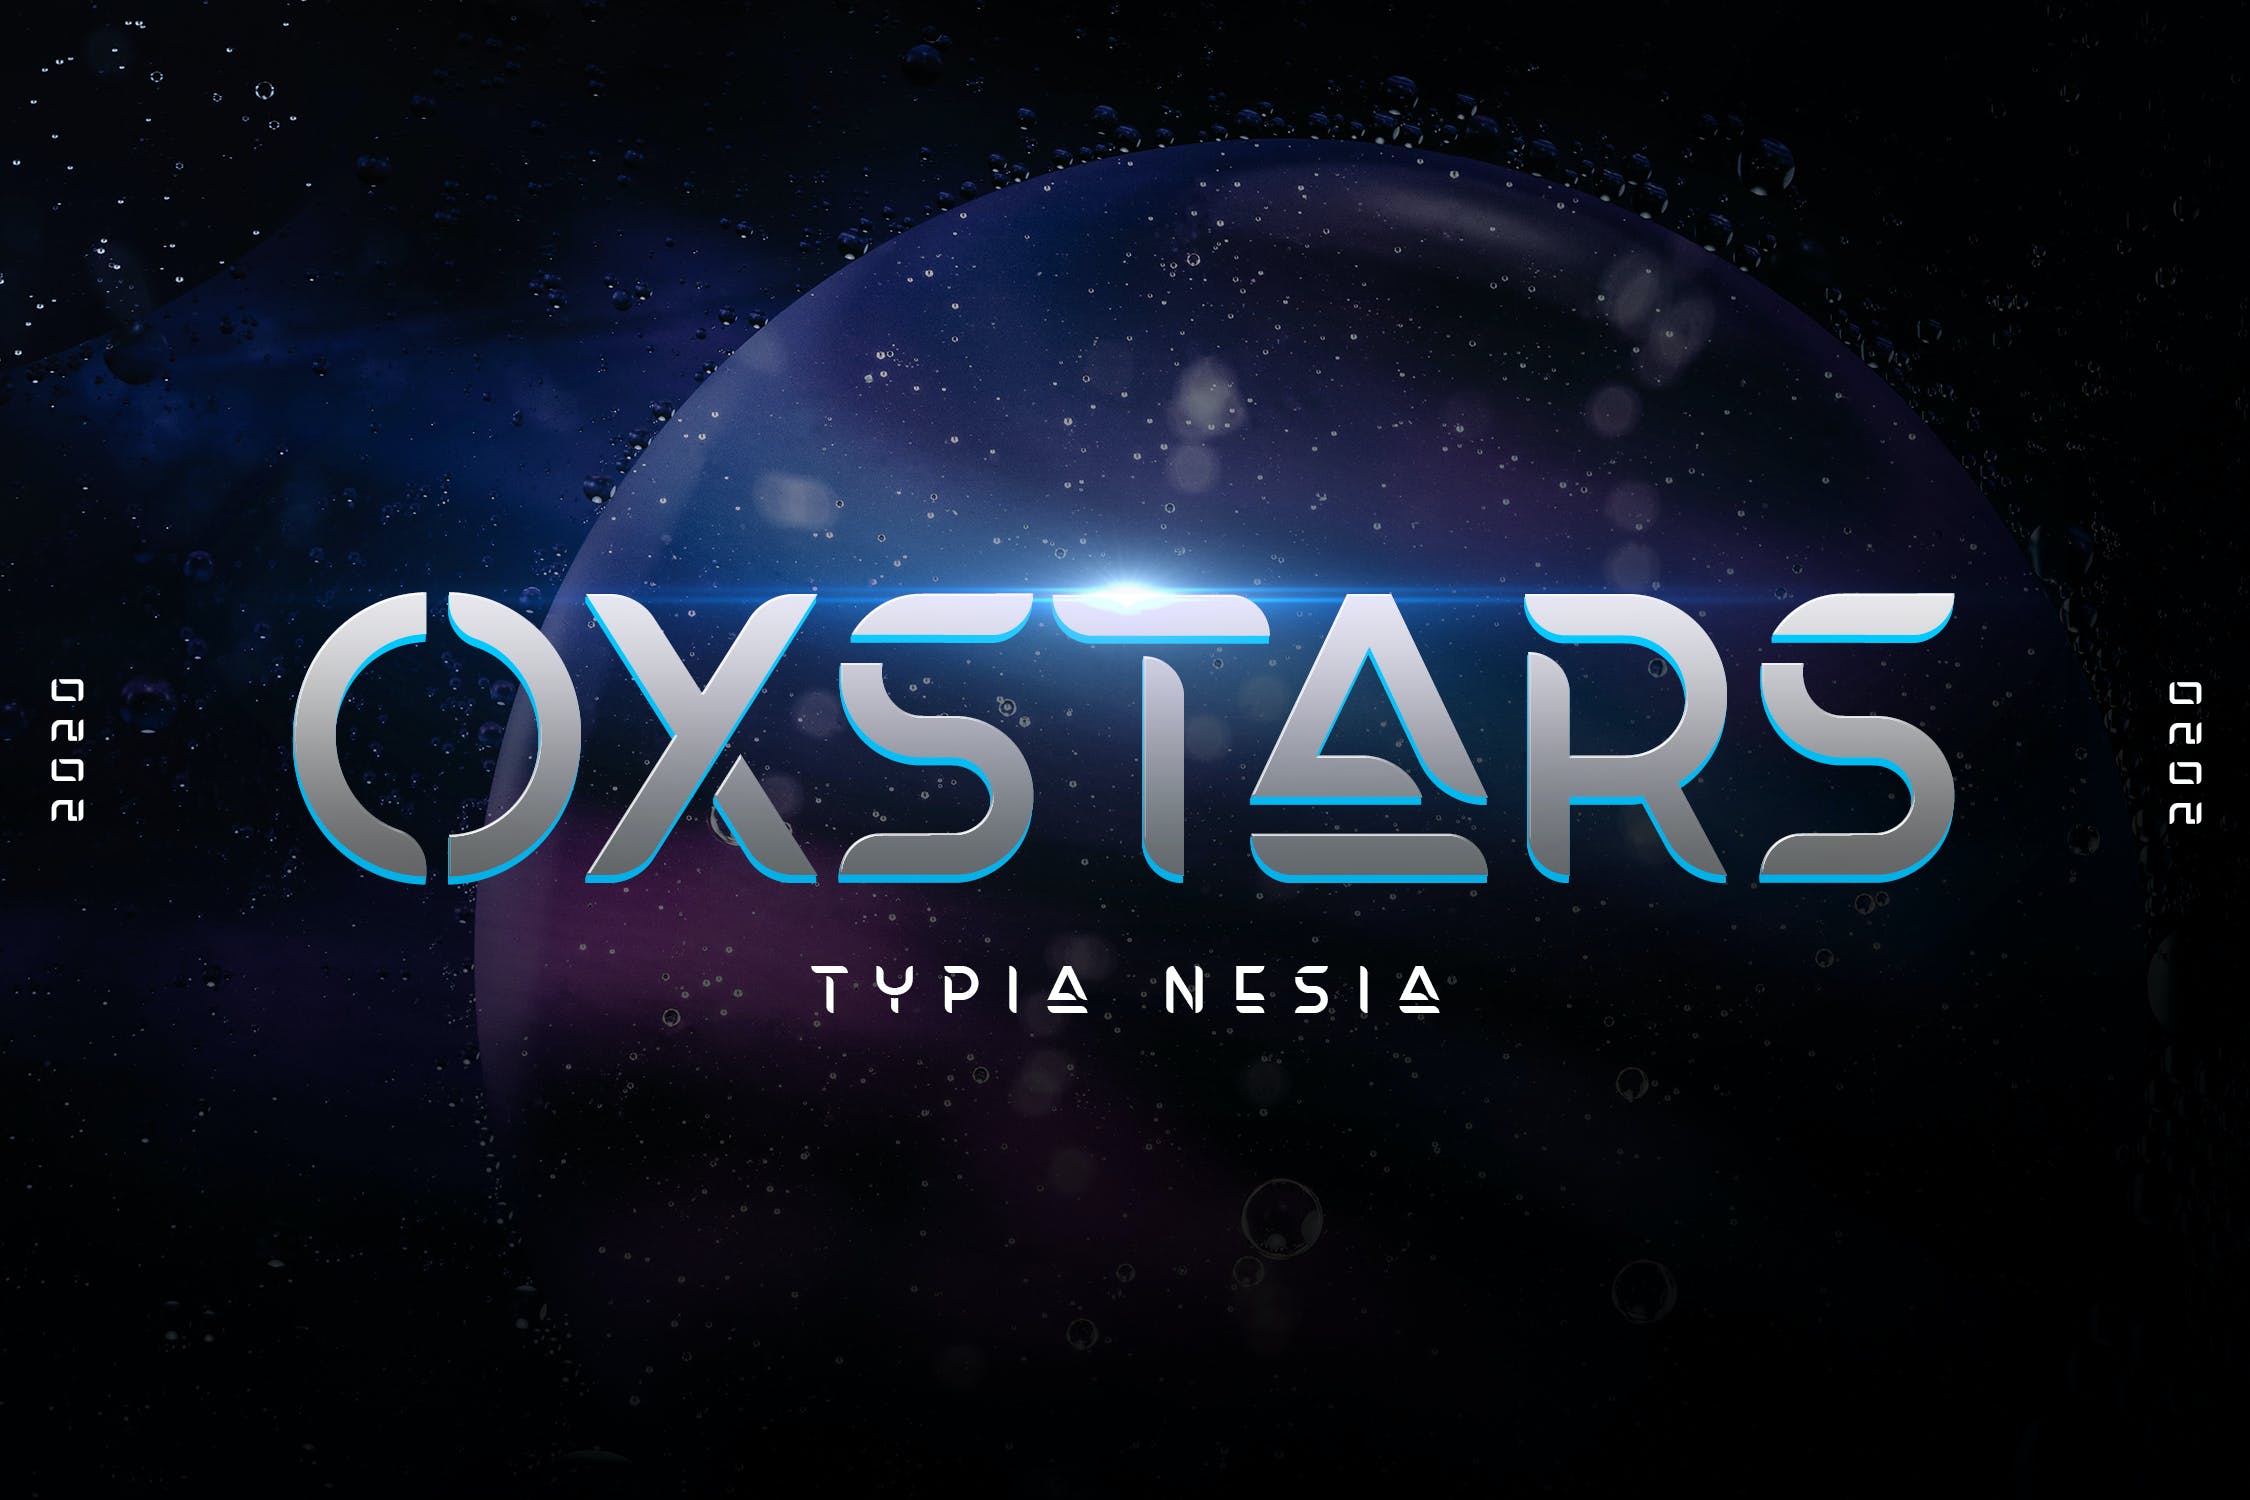 经典未来科幻电影标题logo设计无衬线英文字体素材oxstars–future